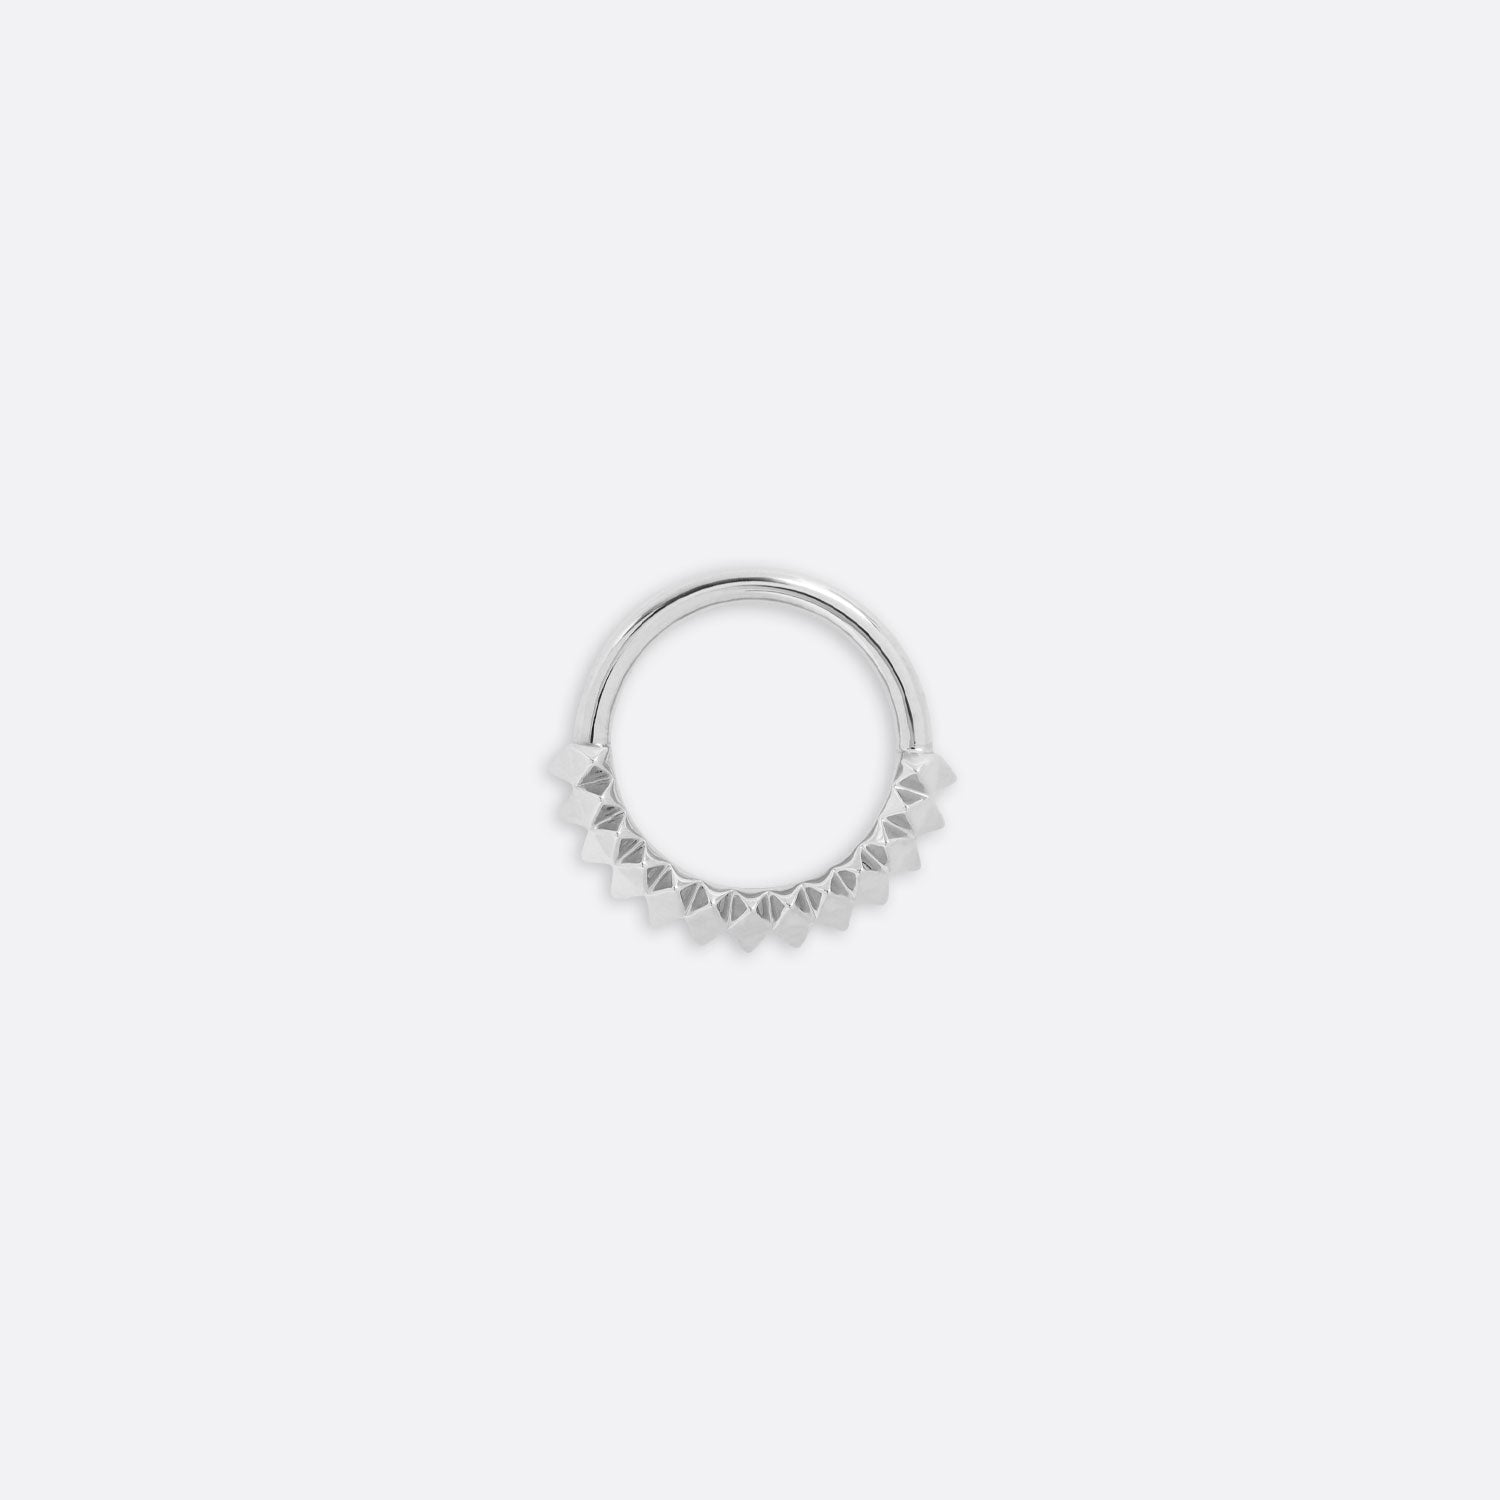 Petite Carbonado Seam Ring - 14K WHITE